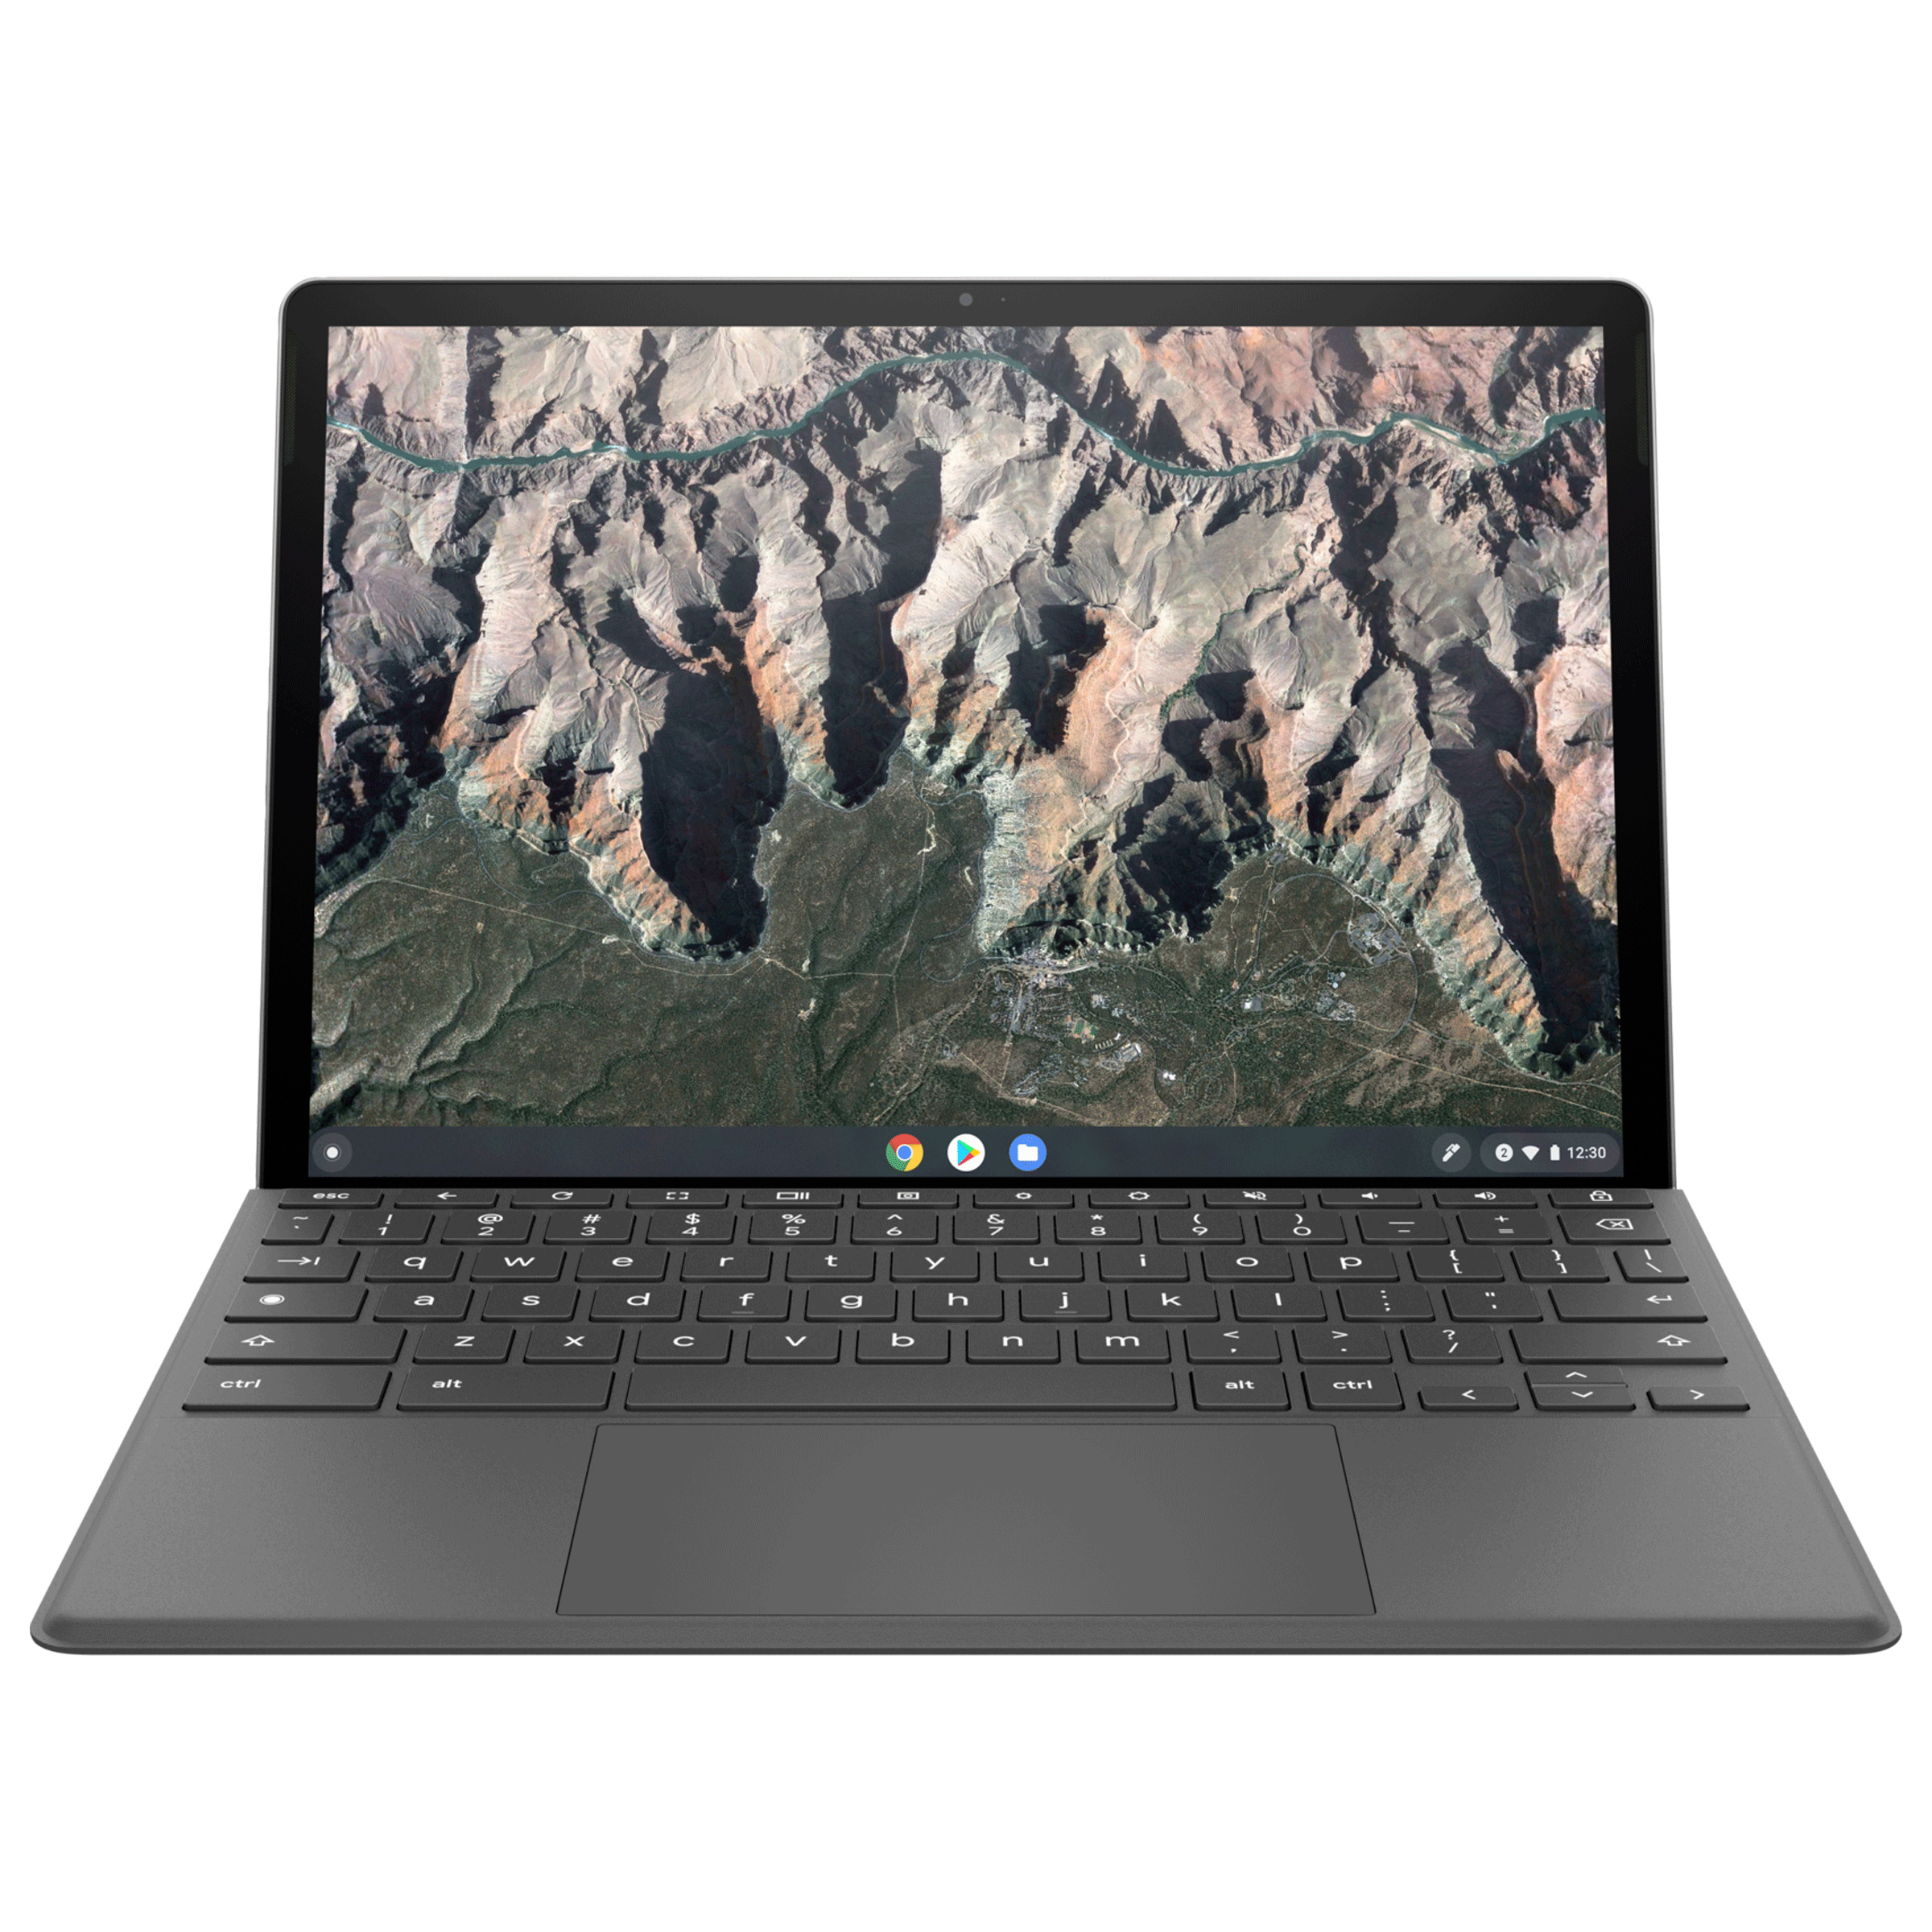 HP x2 11 Tablet PC Snapdragon 7c Chrome OS Chromebook (8 GB RAM, 128GB eMMC, Qualcomm Adreno 618 GPU, 27.9cm, da0017QU, Grey)_1